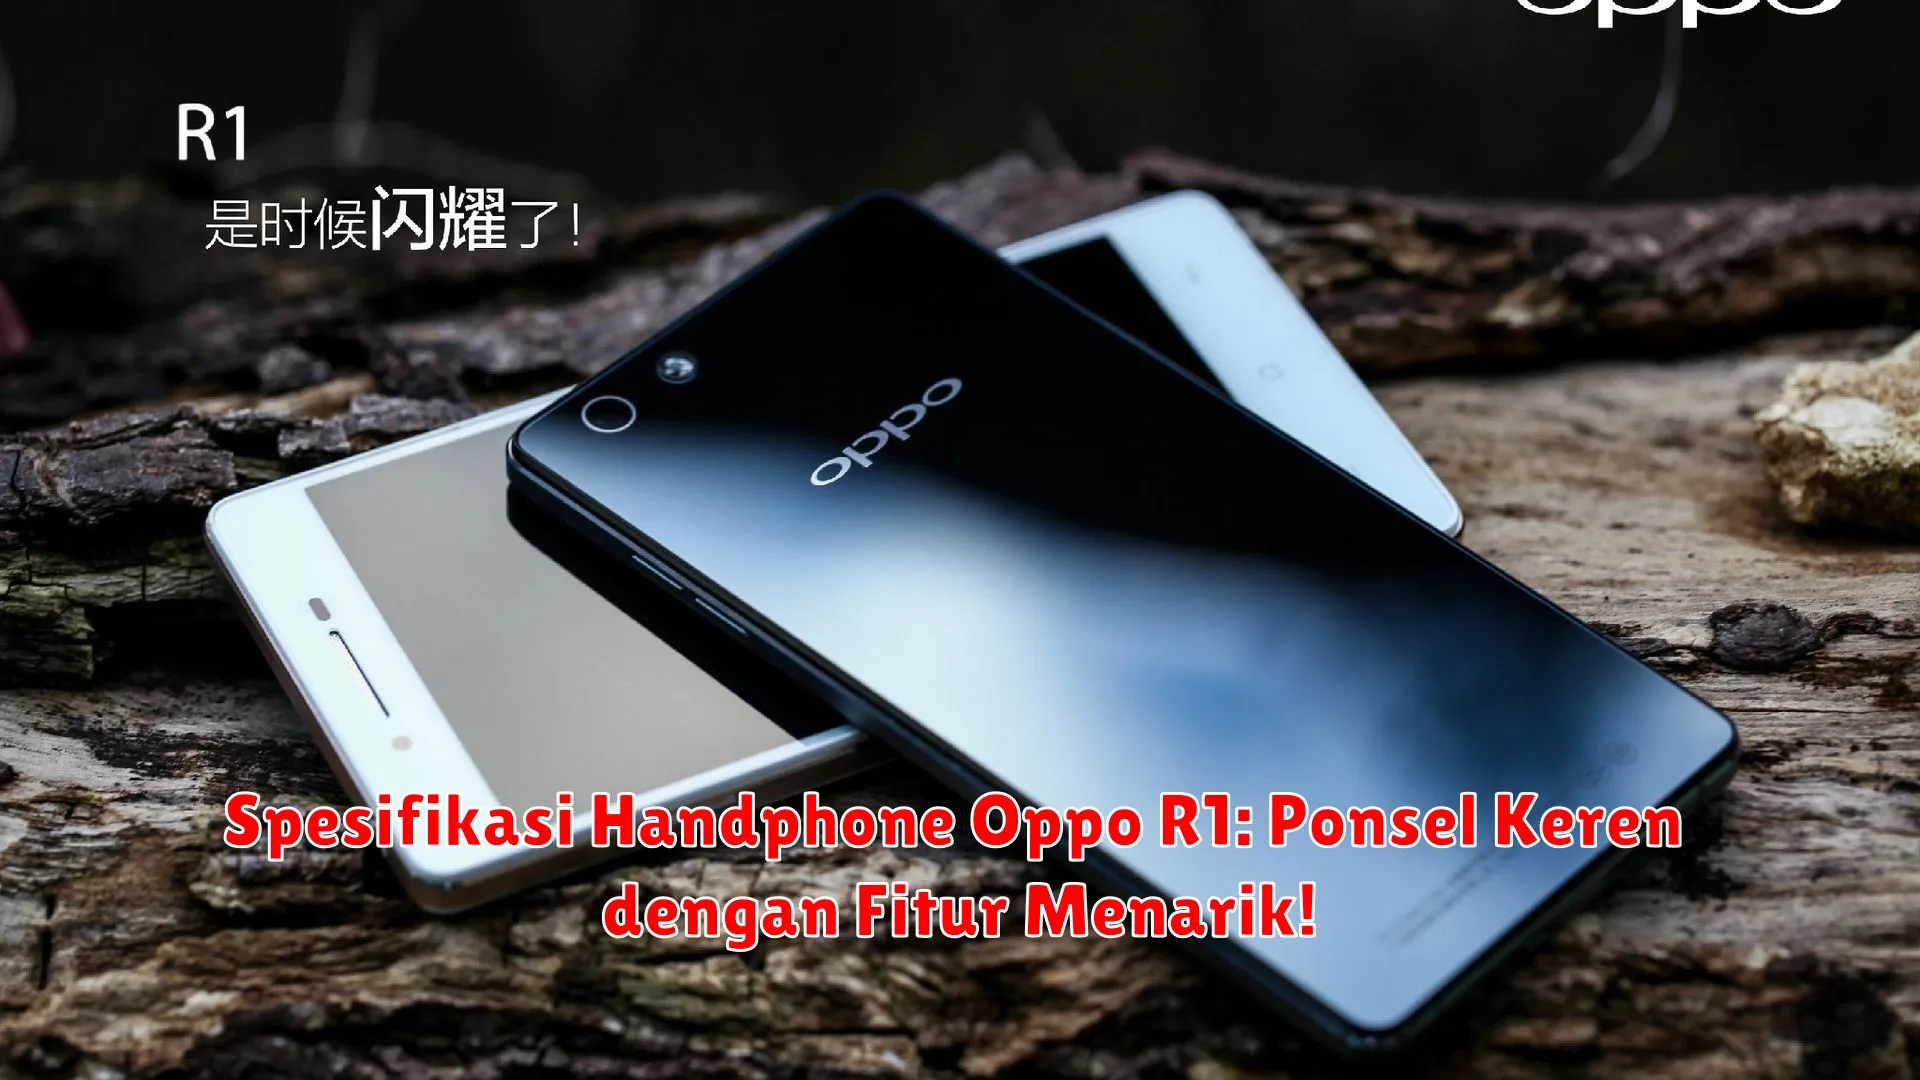 Spesifikasi Handphone Oppo R1: Ponsel Keren dengan Fitur Menarik!